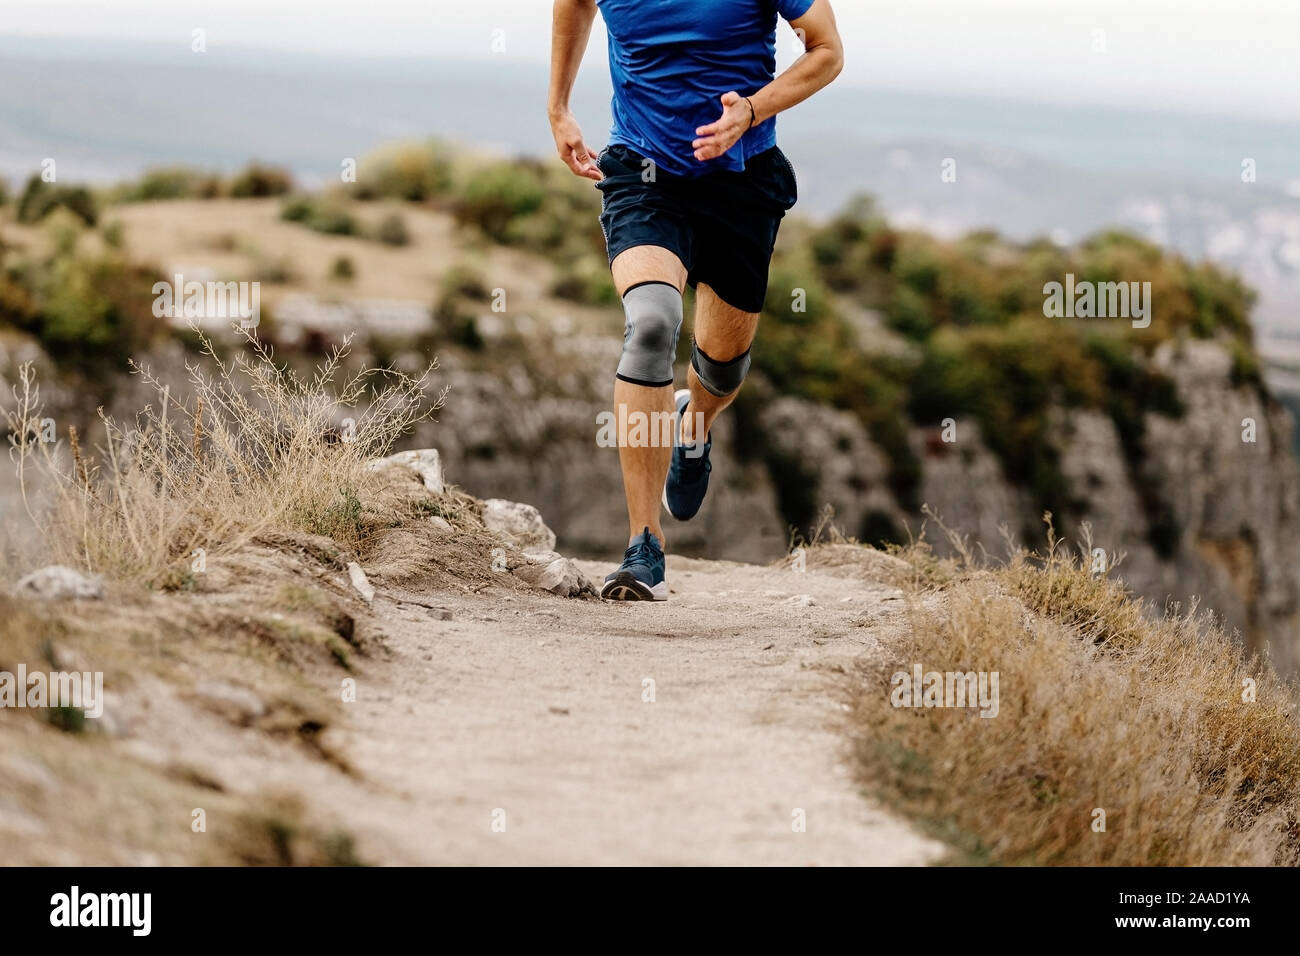 Athlet runner Knieverletzung in Knee Pads auf Mountain Trail Stockfoto